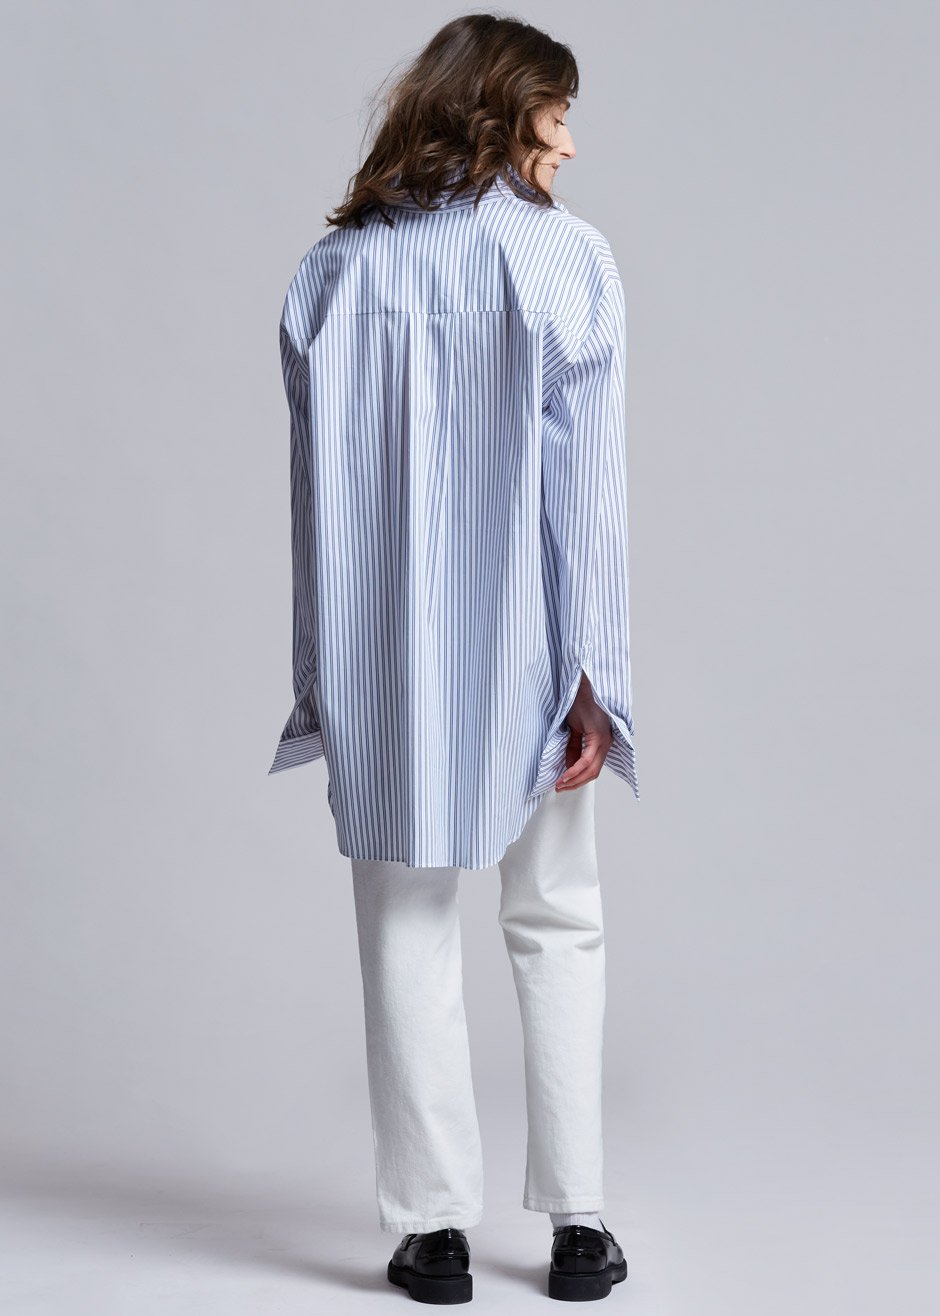 Pinstripe Statement Cuff Shirt in White/Cobalt - 7